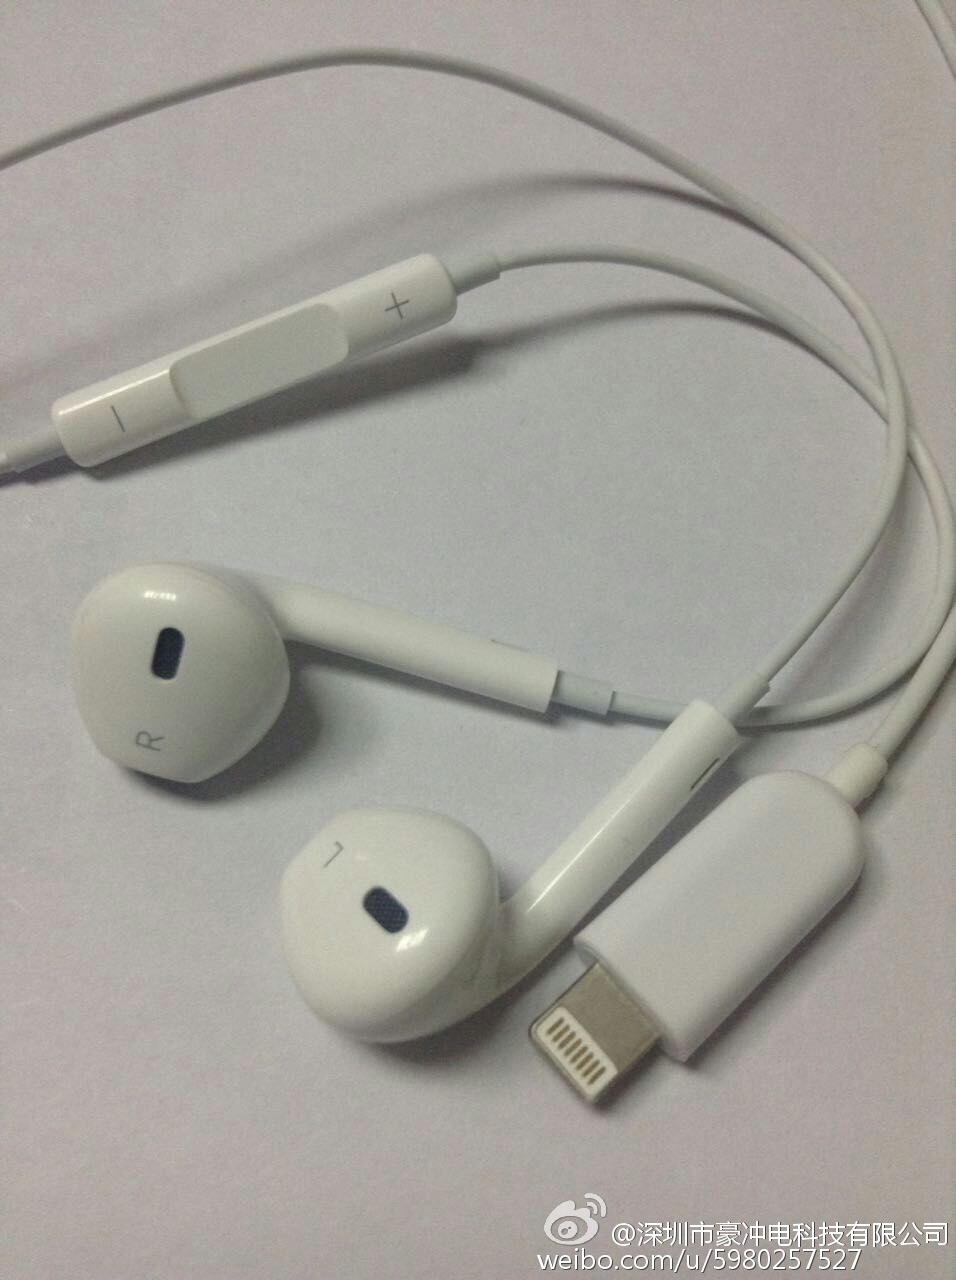 ｢iPhone 7｣に同梱されるLightningコネクタを採用したイヤフォンの写真??